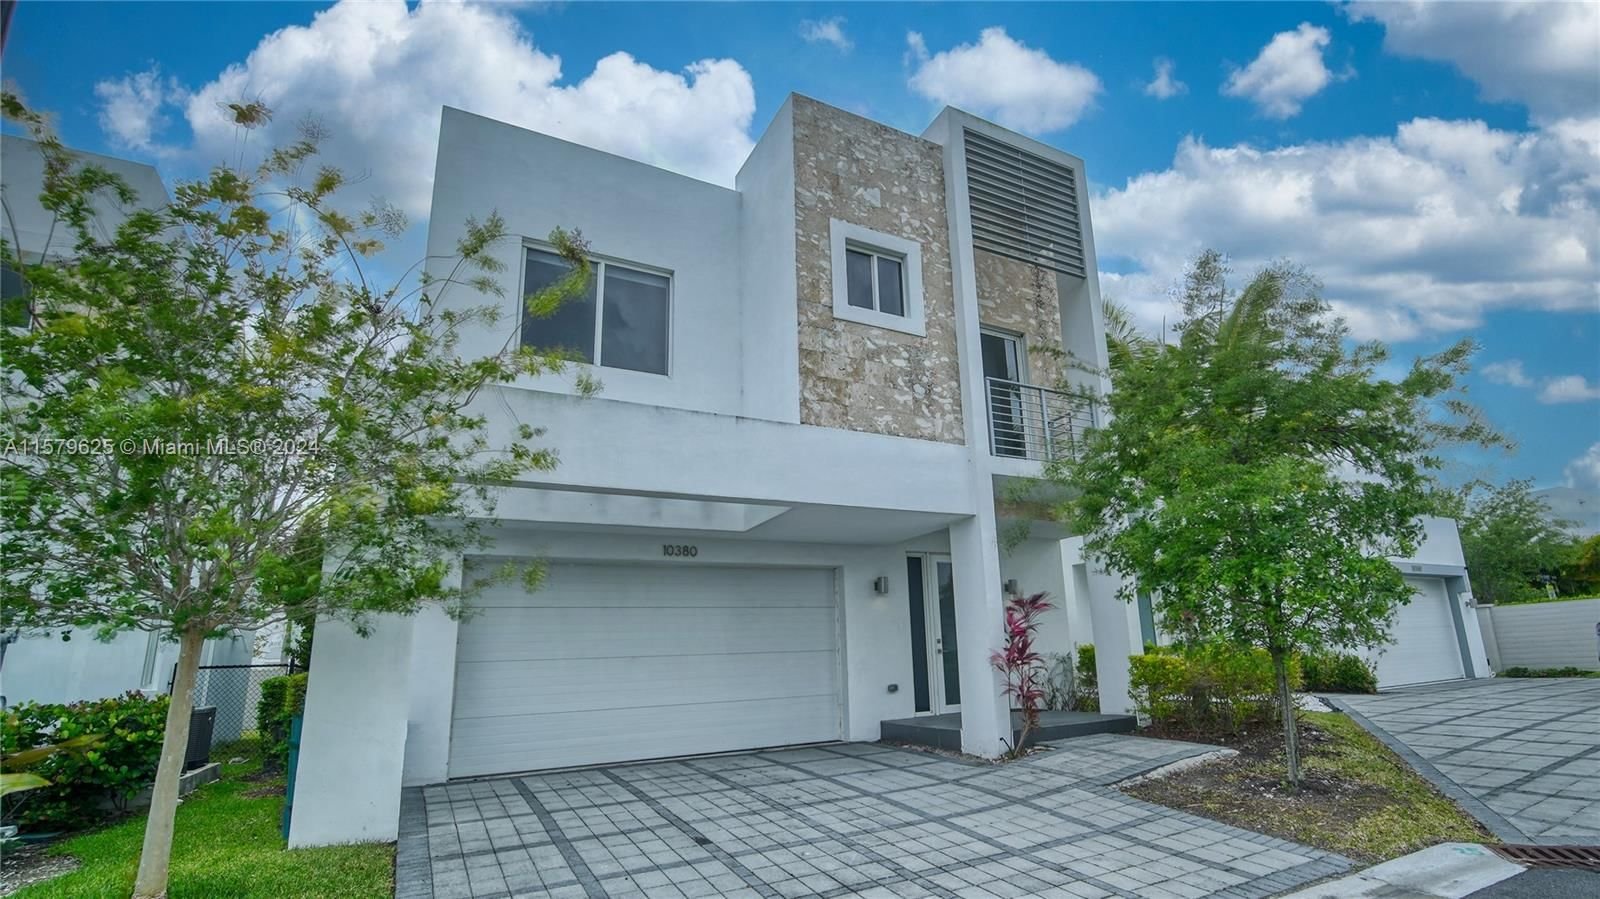 Real estate property located at 10380 68th Ter, Miami-Dade County, NEOVITA/VESTA, Doral, FL